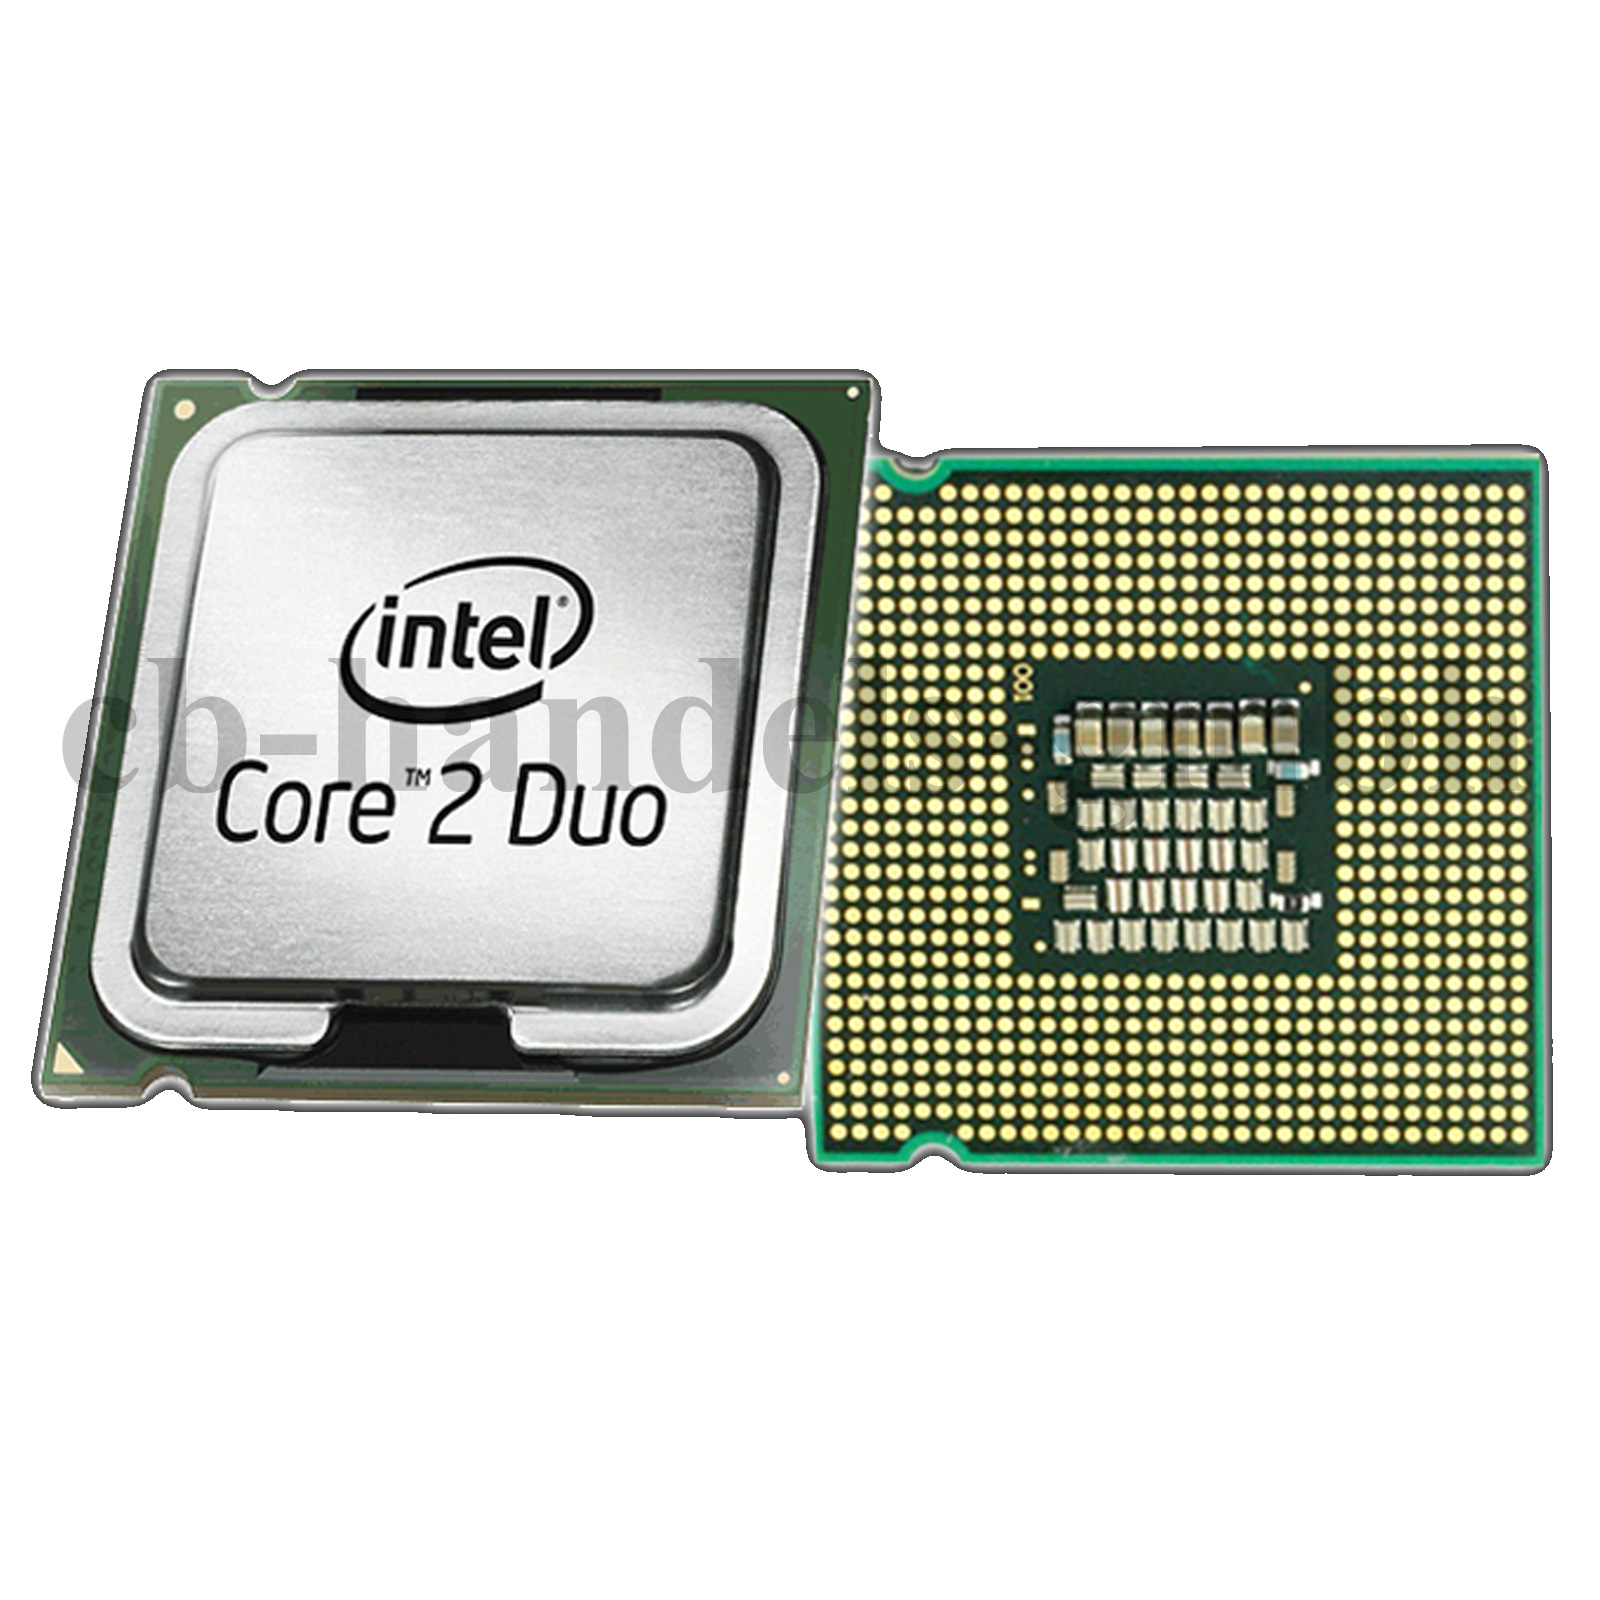 intel core 2 duo e6550 specs